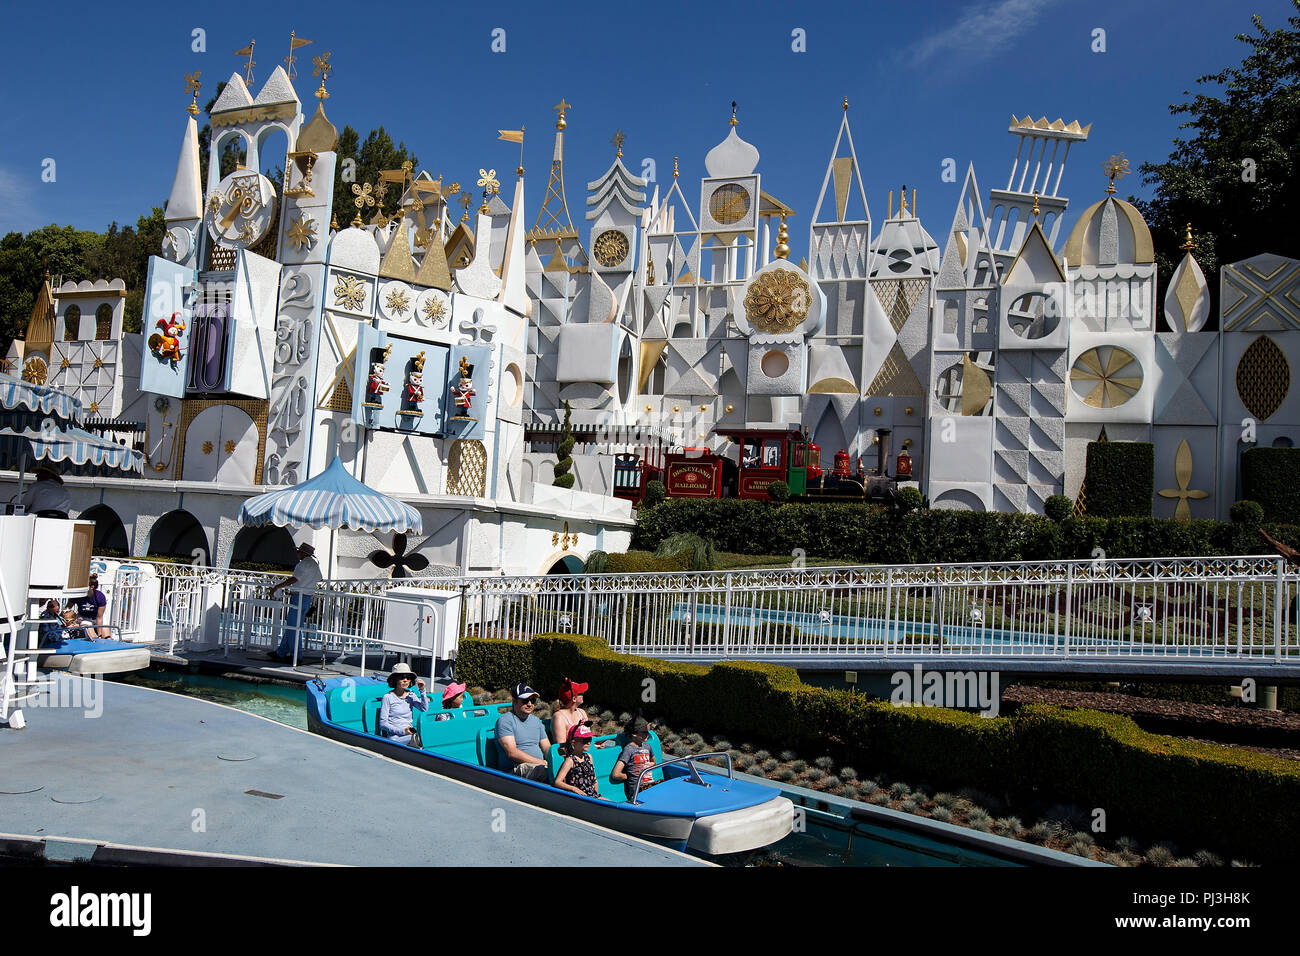 Es ist eine kleine Welt, Disneyland Park, Anaheim, Kalifornien, Vereinigte Staaten von Amerika Stockfoto